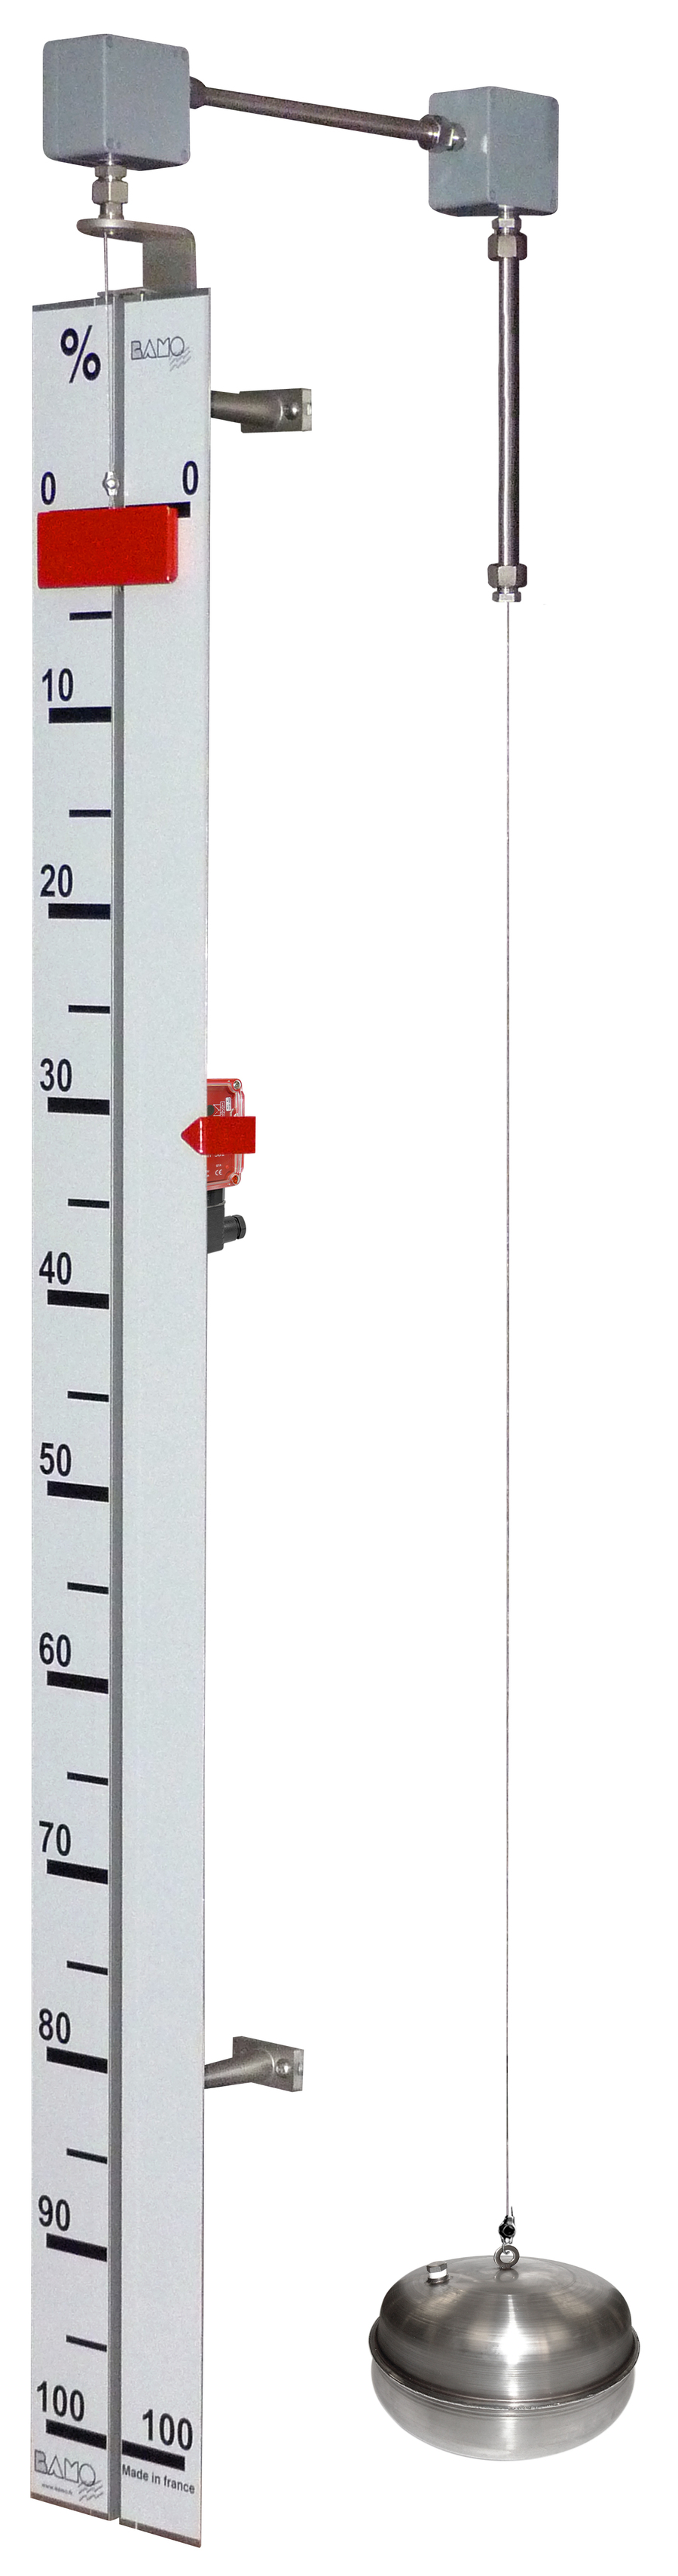 Les différents types de jauge à fioul pour mesurer le niveau restant dans  sa cuve